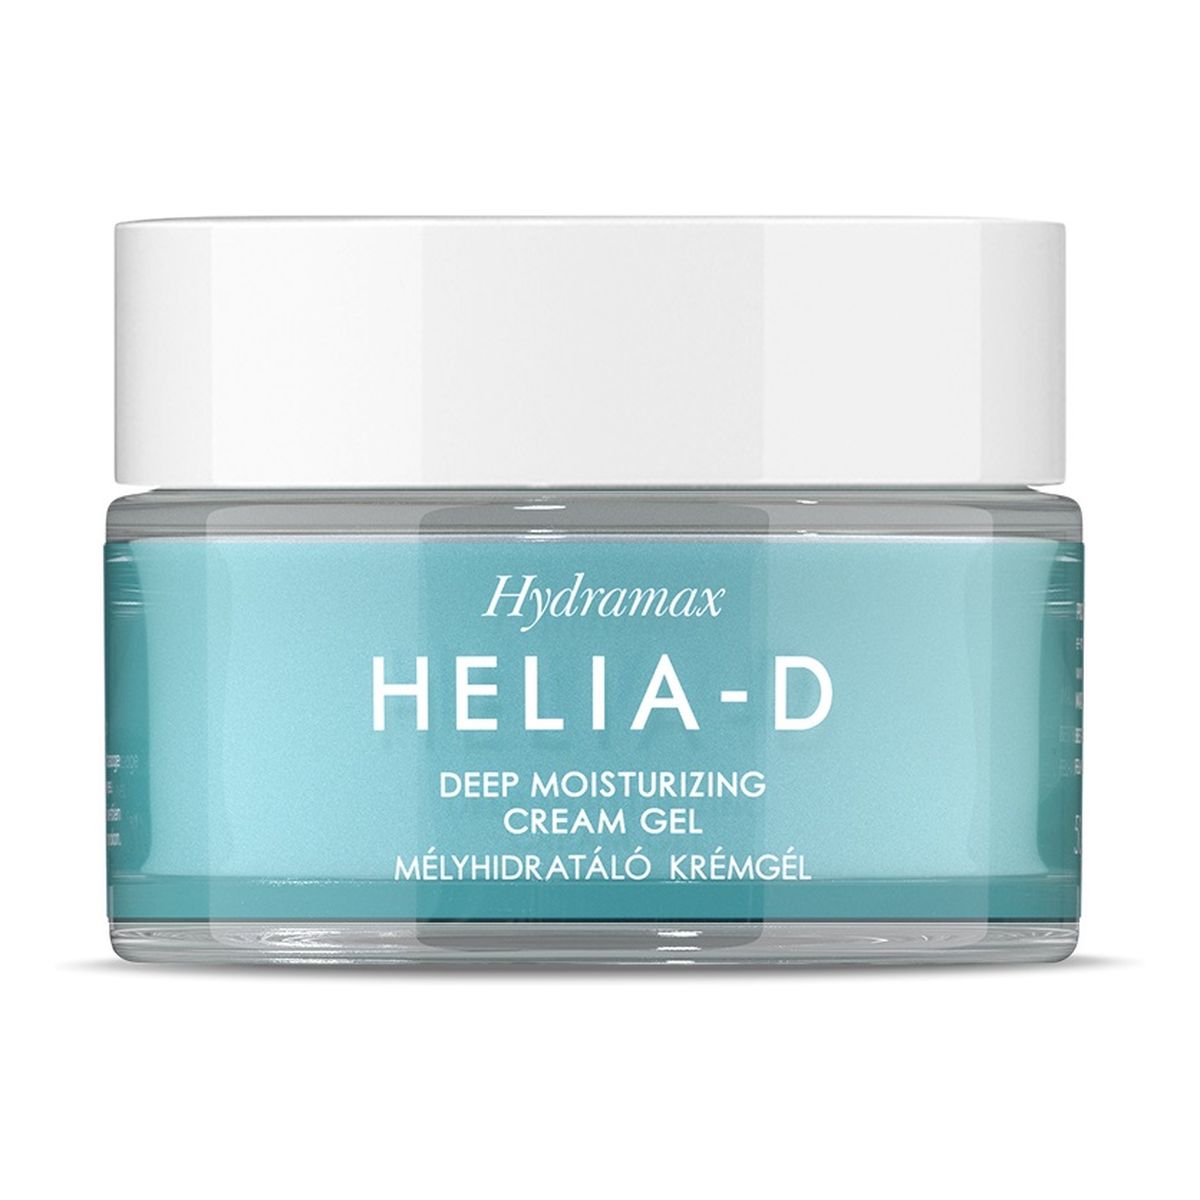 Helia-D Hydramax Deep Moisturizing Cream Gel głęboko nawilżający Krem-żel do cery suchej 50ml